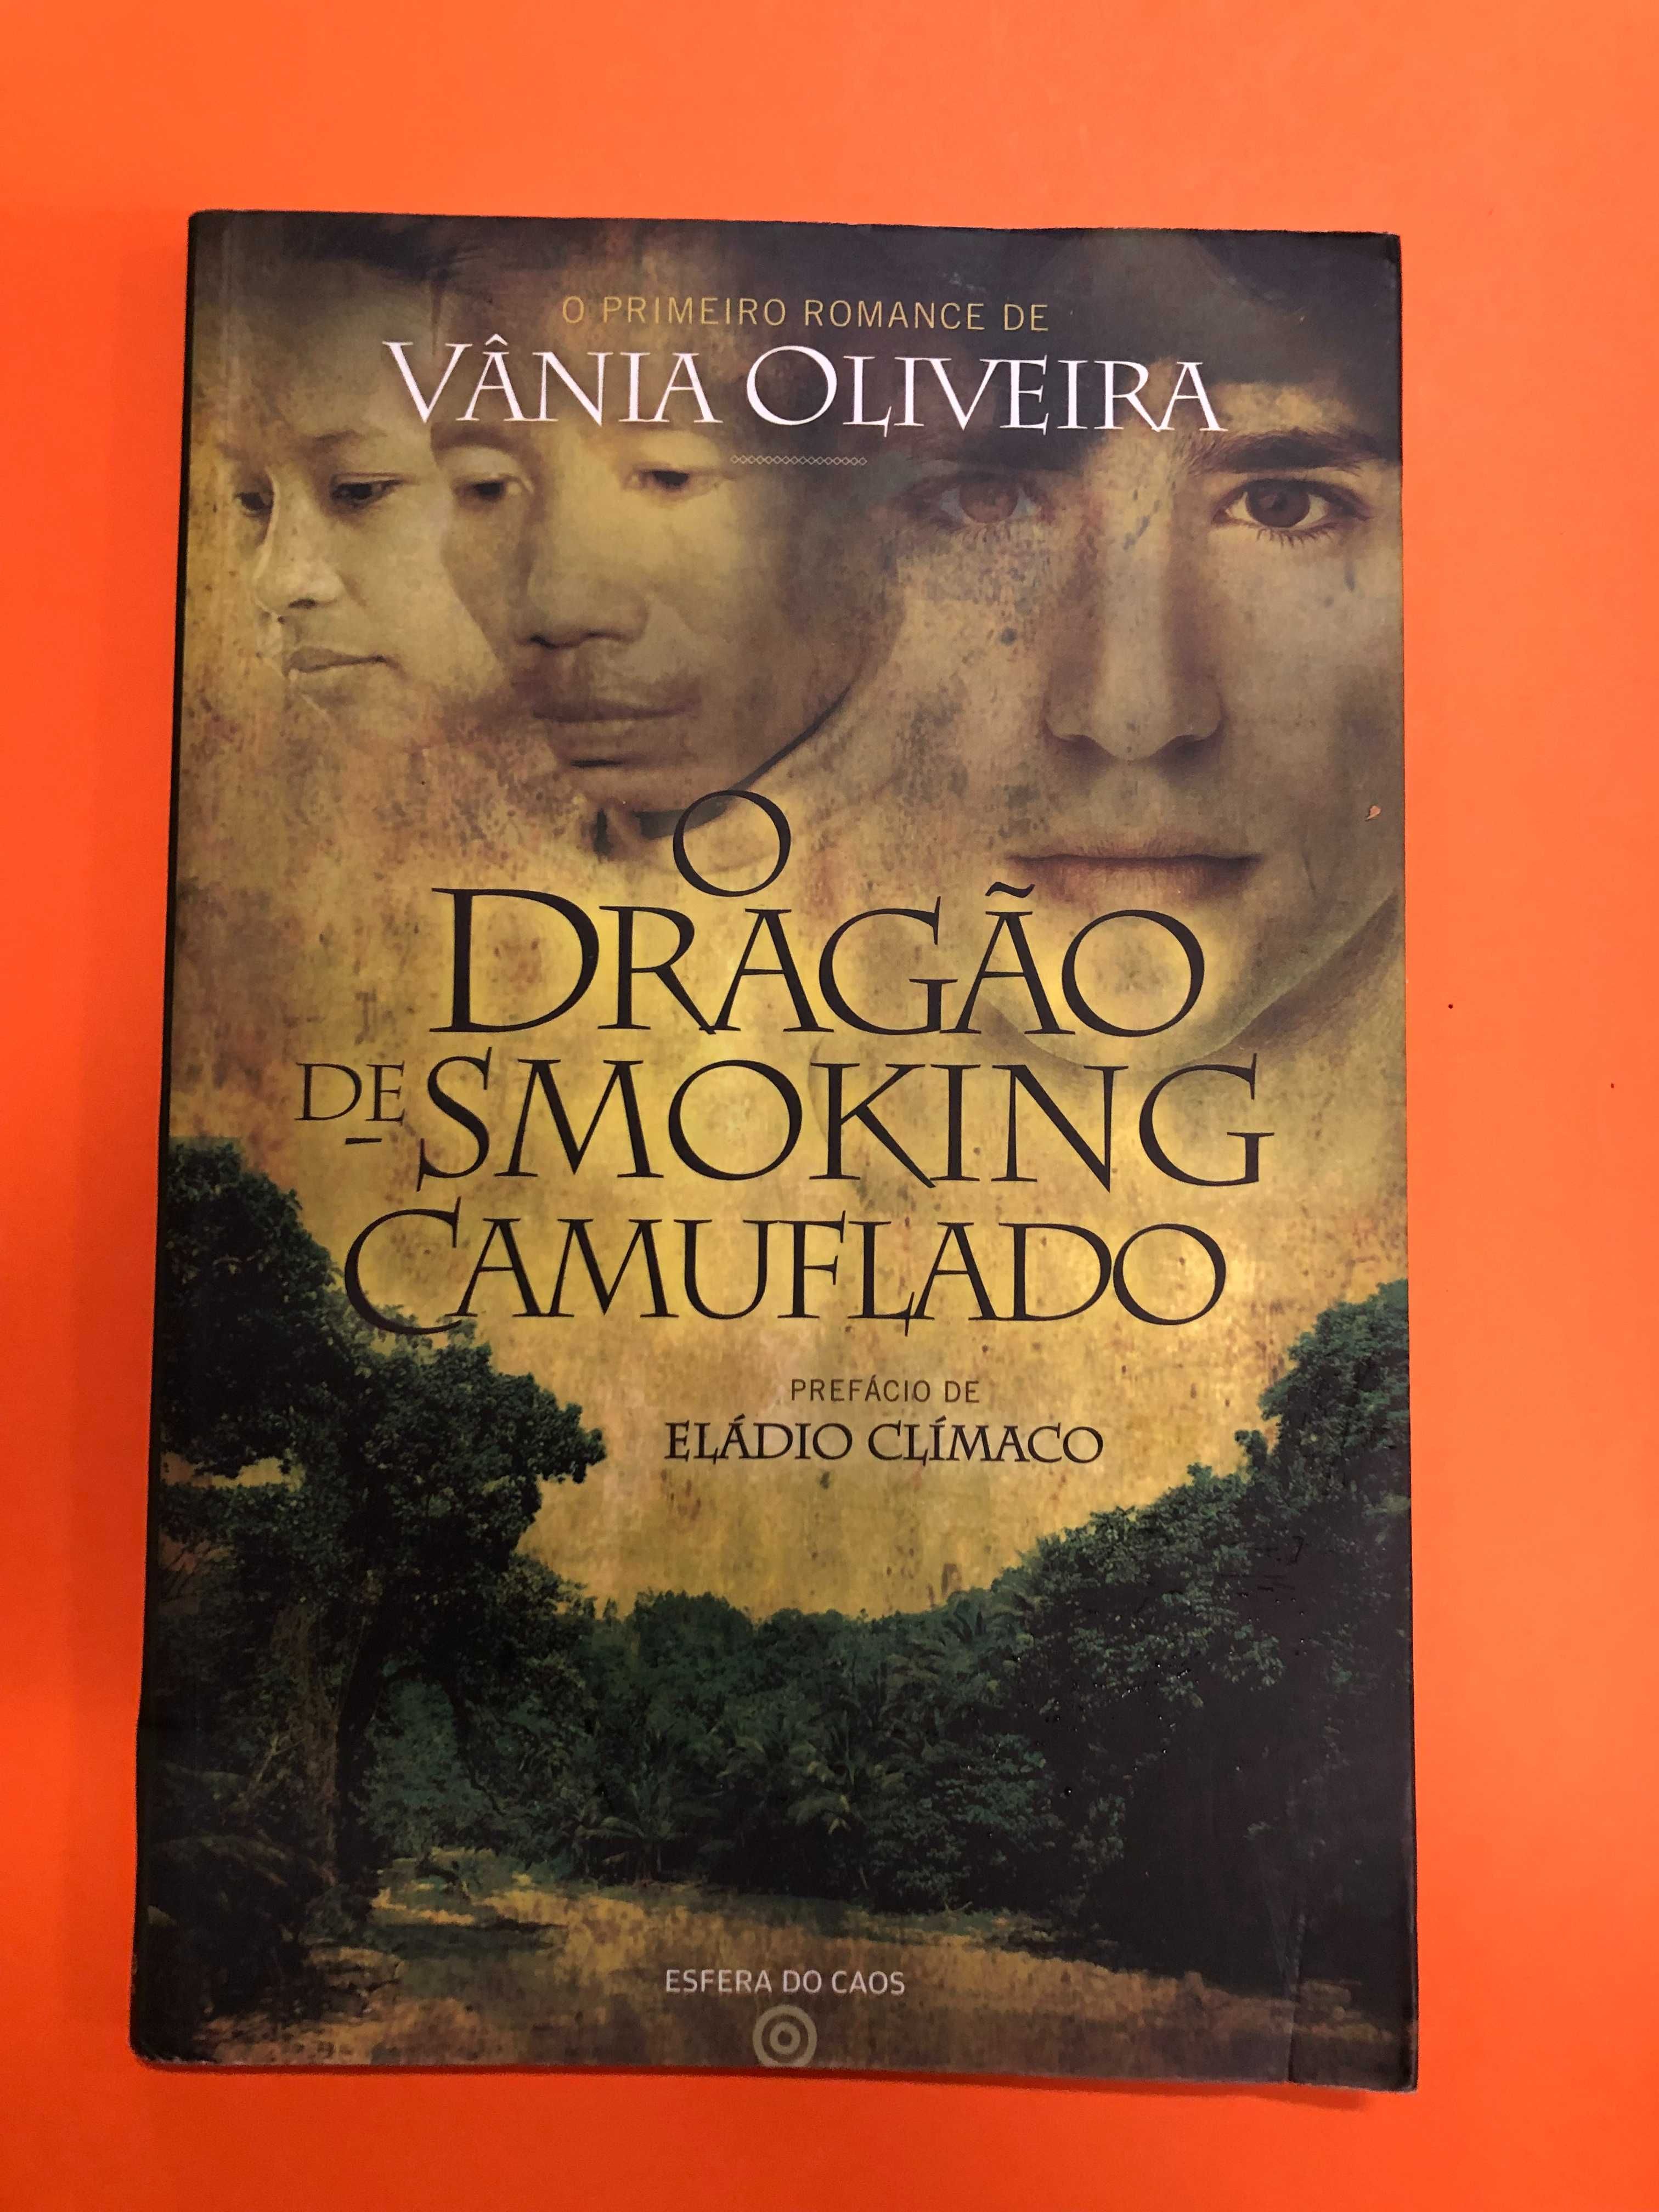 O dragão de smoking camuflado - Vânia Oliveira